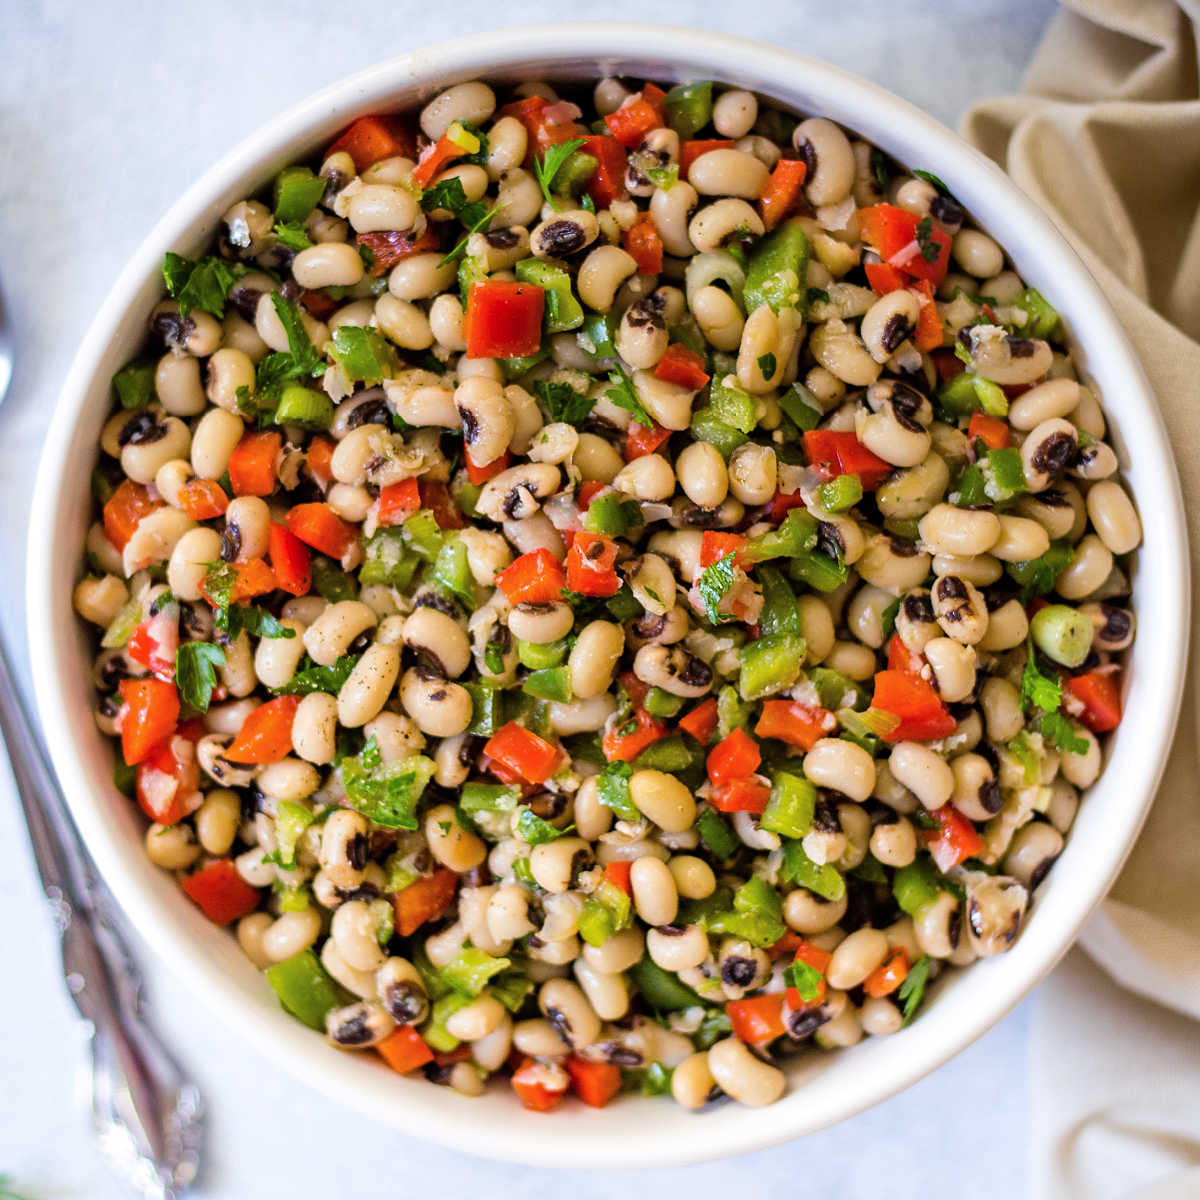 Hattie B's Famous Black Eyed Pea Salad | Life, Love, and Good Food